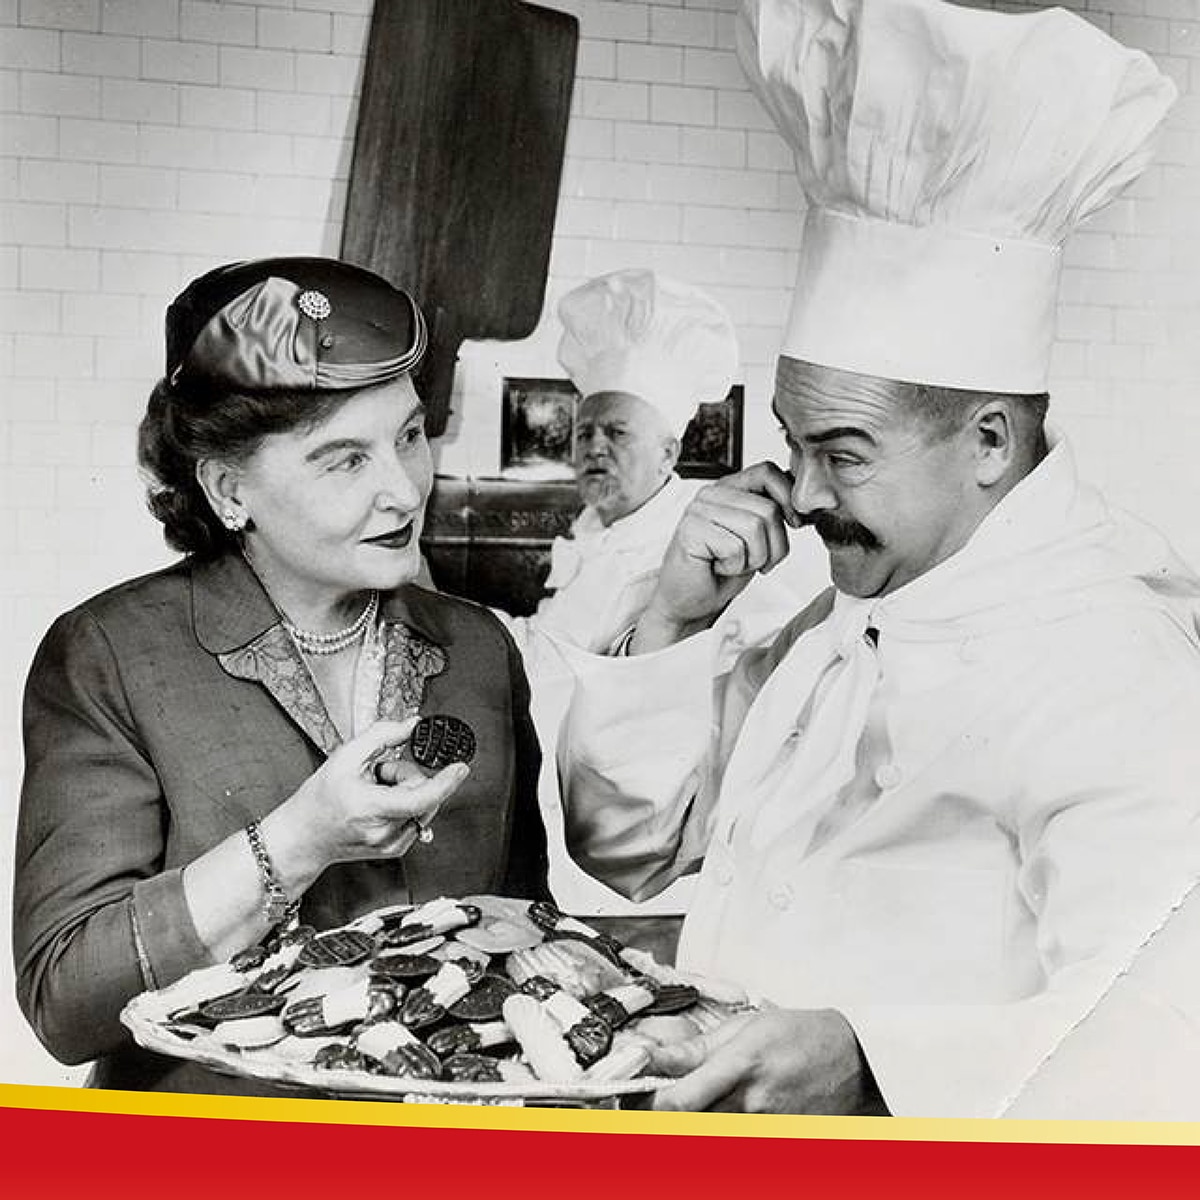 Pepperidge Farm 琣伯莉1937-1940 年間計劃開創全新的糕餅店，但二戰擱置了這個計劃。戰爭導致原料供不應求而削減產量，直到 1945 年和平到來，終於可以實現建造屬於自己的第一間現代糕餅店的夢想。